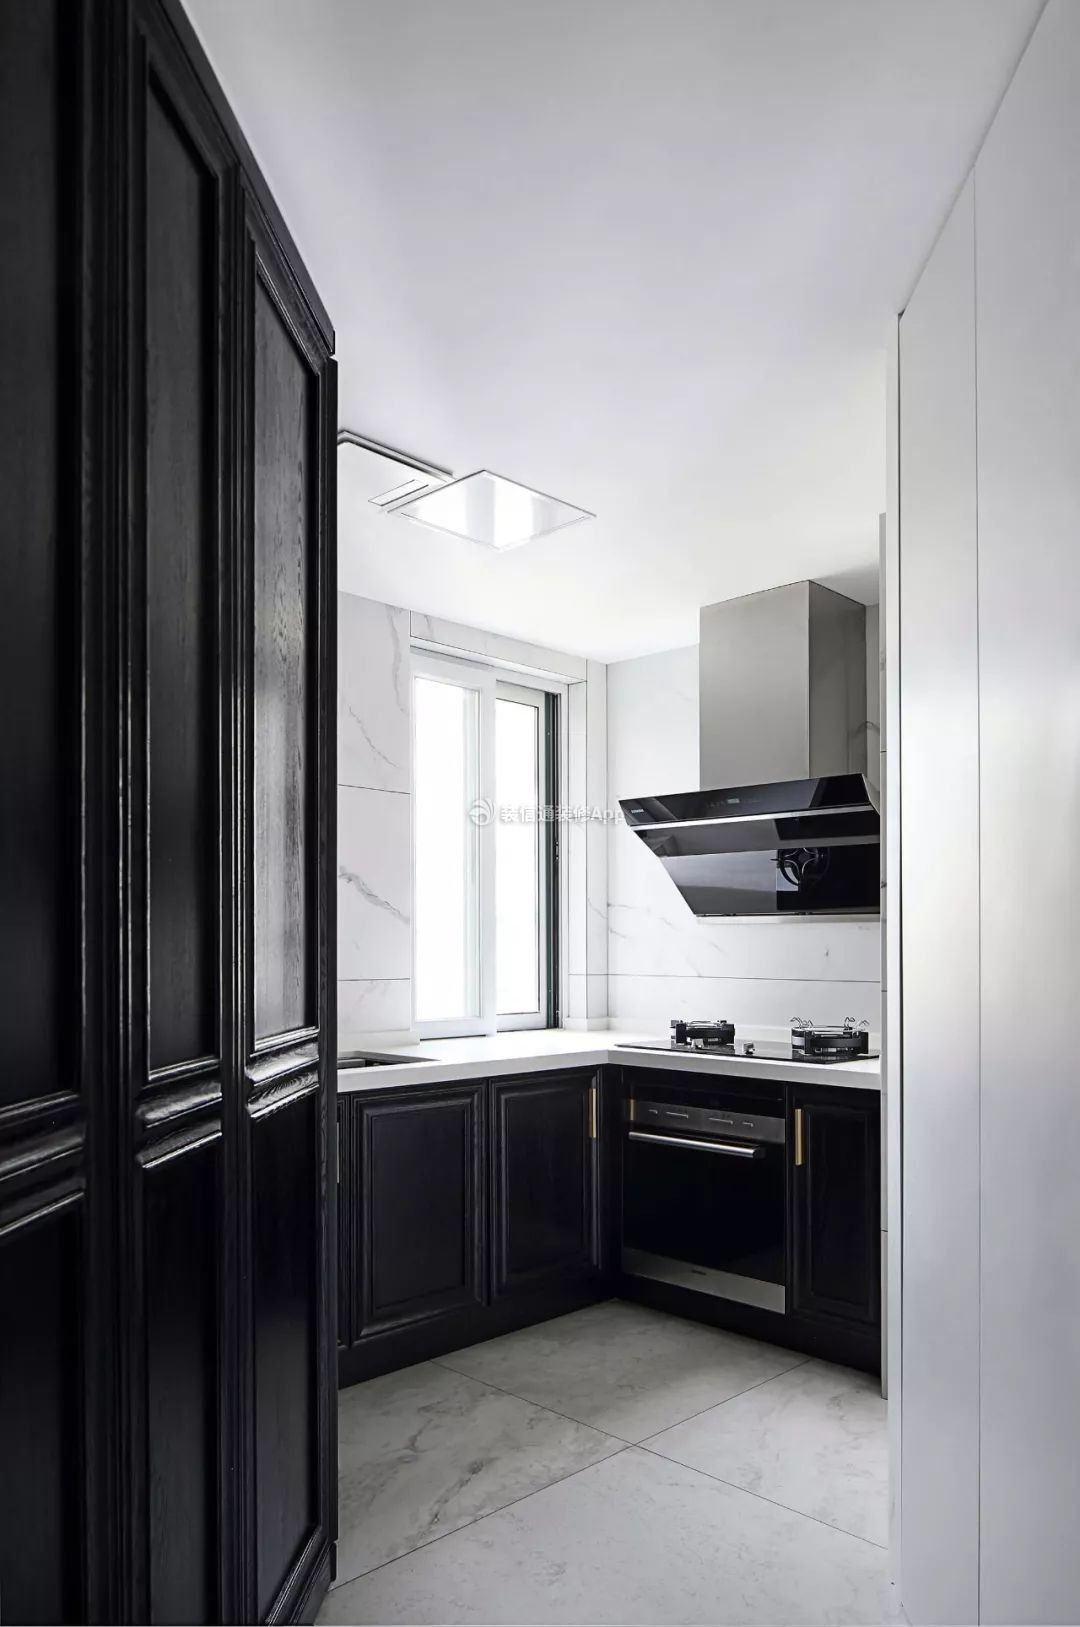 130平米欧式厨房黑色橱柜装修效果图